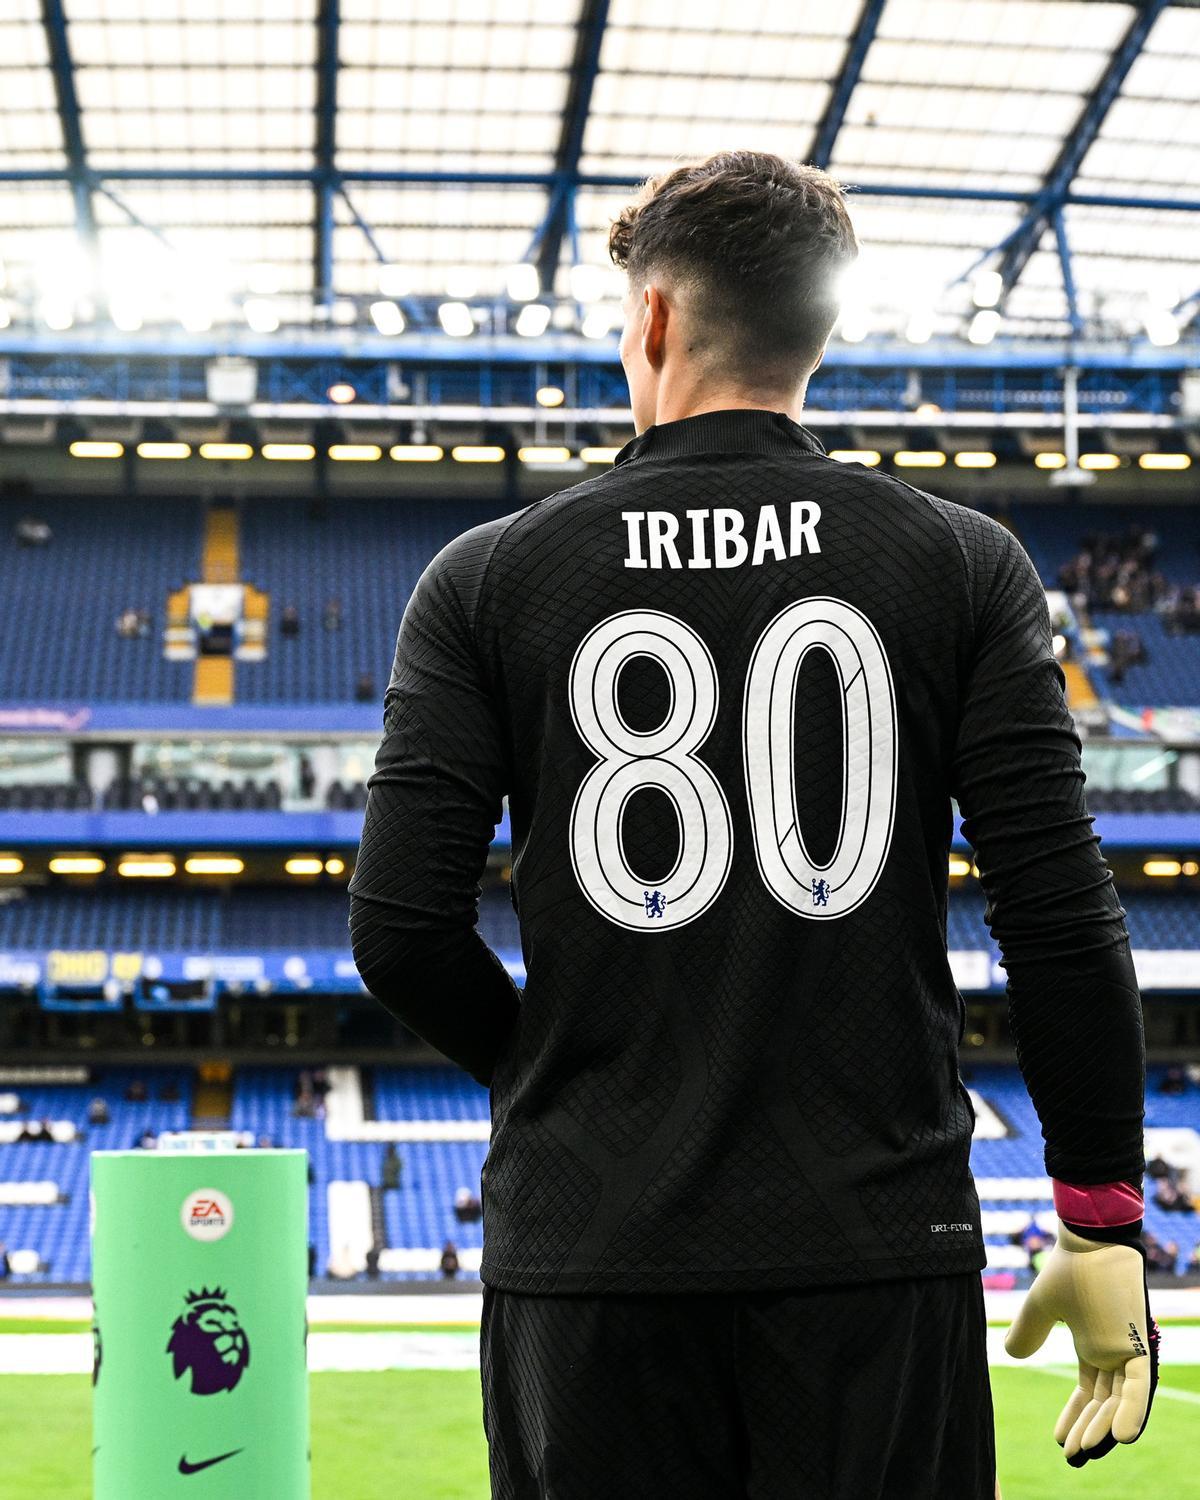 Kepa Arrizabalaga, portero vasco del Chelsea, sale a calentar con la camiseta de Iribar y el número 80. 